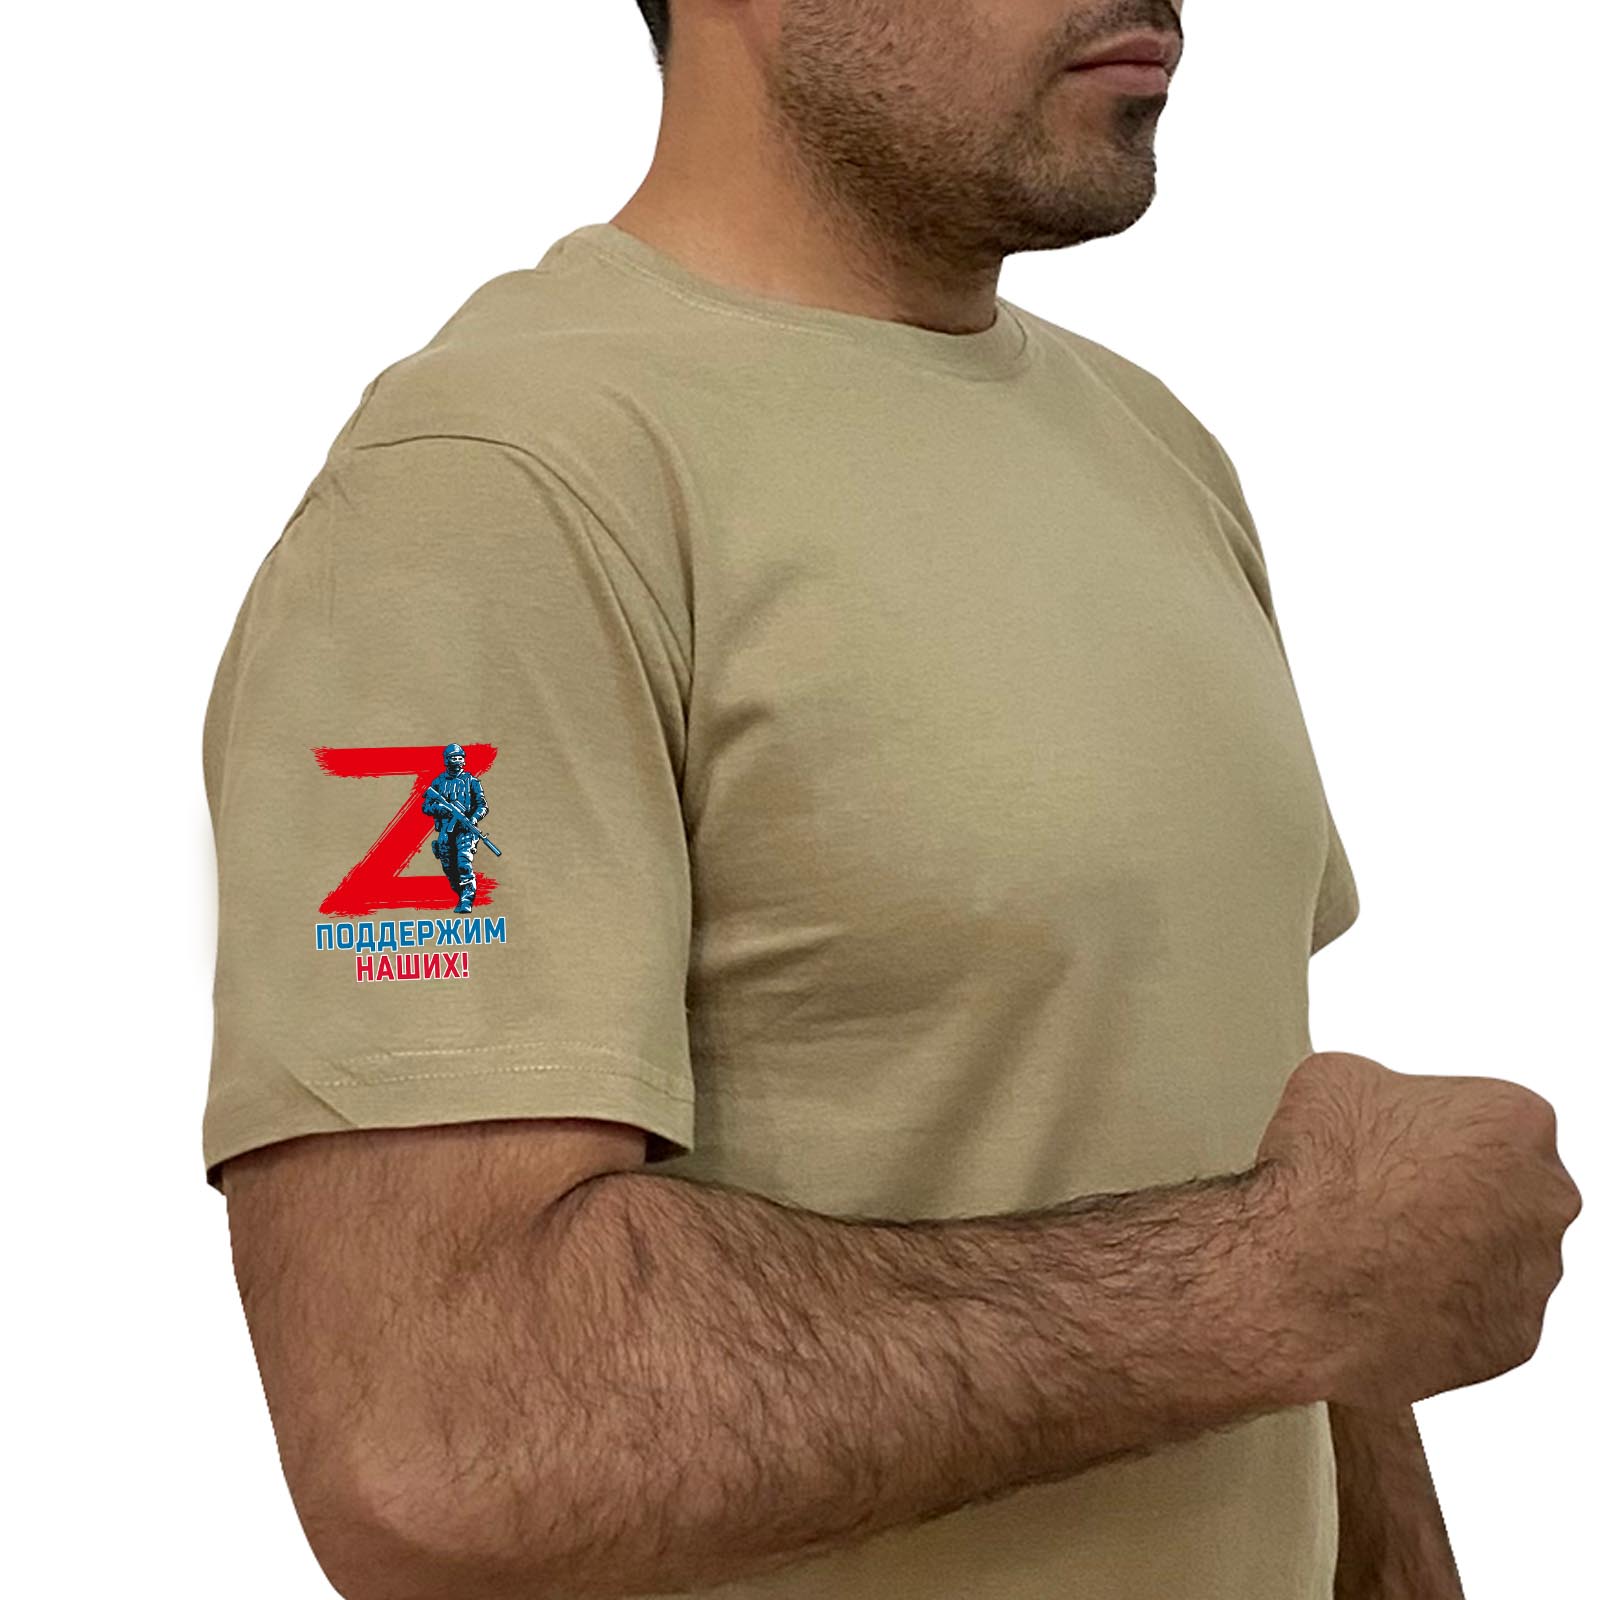 Купить хлопковую трендовую футболку с литерой Z онлайн